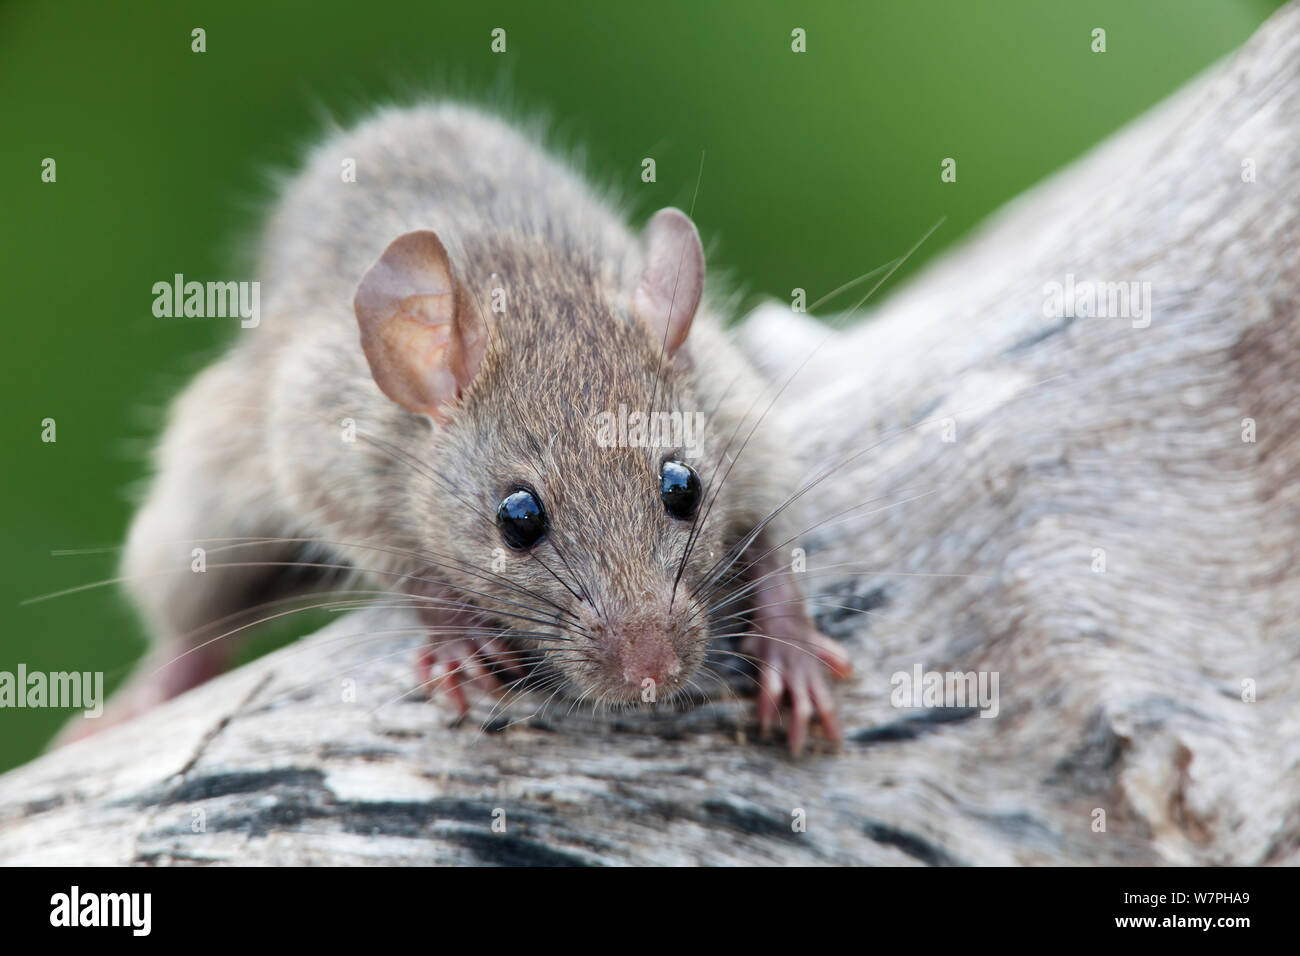 Rat noir (Rattus rattus), les espèces introduites sur l'île de Maria Magdalena, La Réserve de biosphère des îles Marias, Golfe de Californie, Mexique, septembre. Banque D'Images